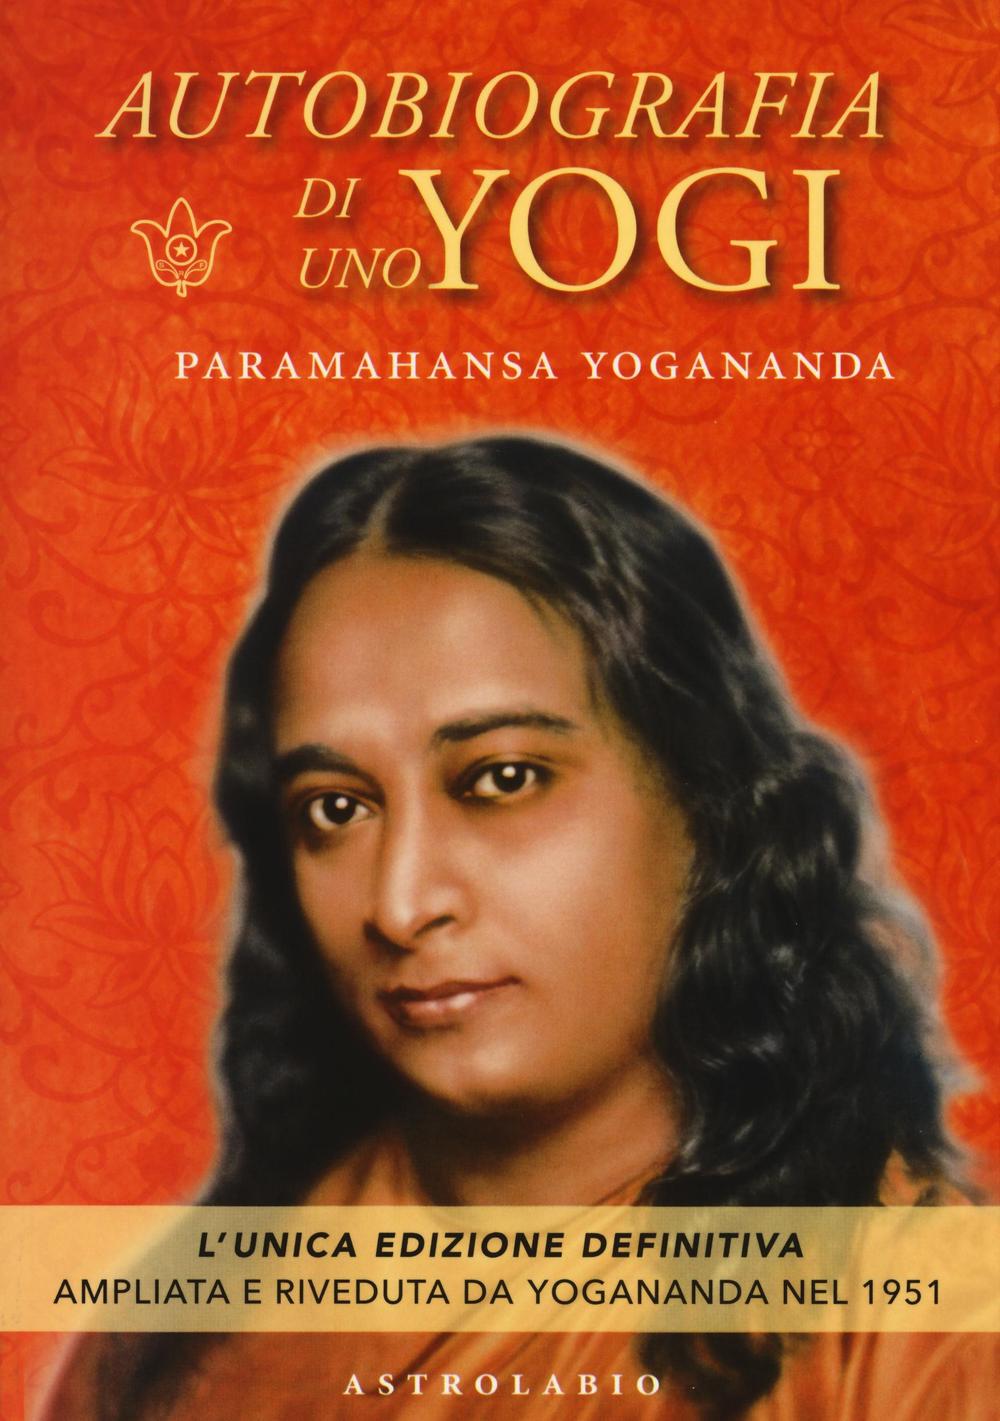 Carte Autobiografia di uno yogi A. Paramhansa Yogananda